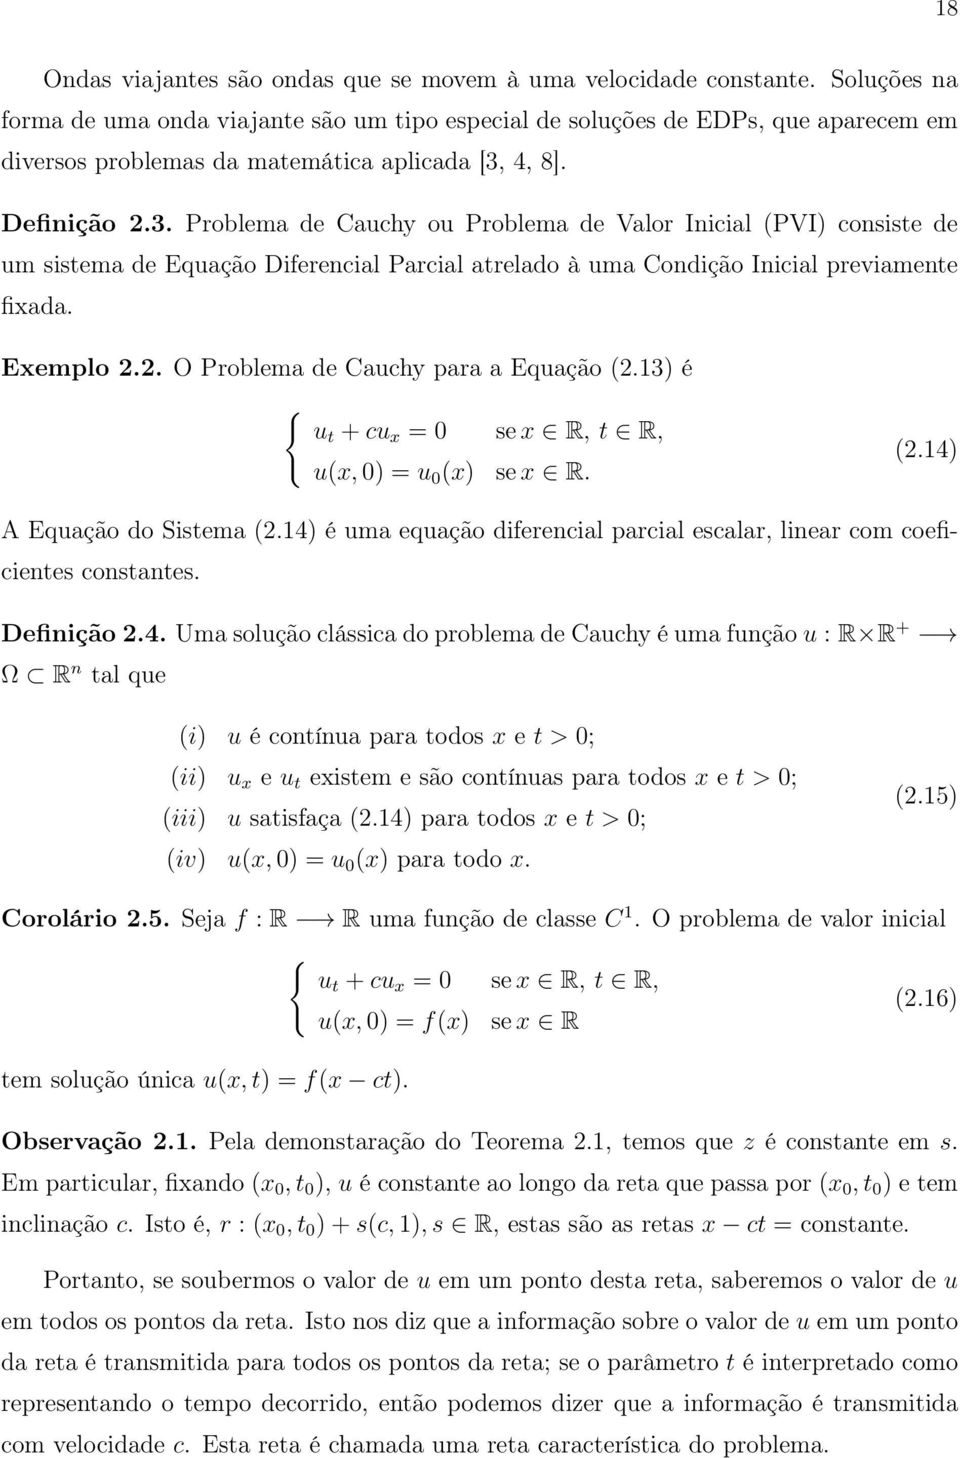 4, 8]. Definição 2.3. Problema de Cauchy ou Problema de Valor Inicial (PVI) consiste de um sistema de Equação Diferencial Parcial atrelado à uma Condição Inicial previamente fixada. Exemplo 2.2. O Problema de Cauchy para a Equação (2.